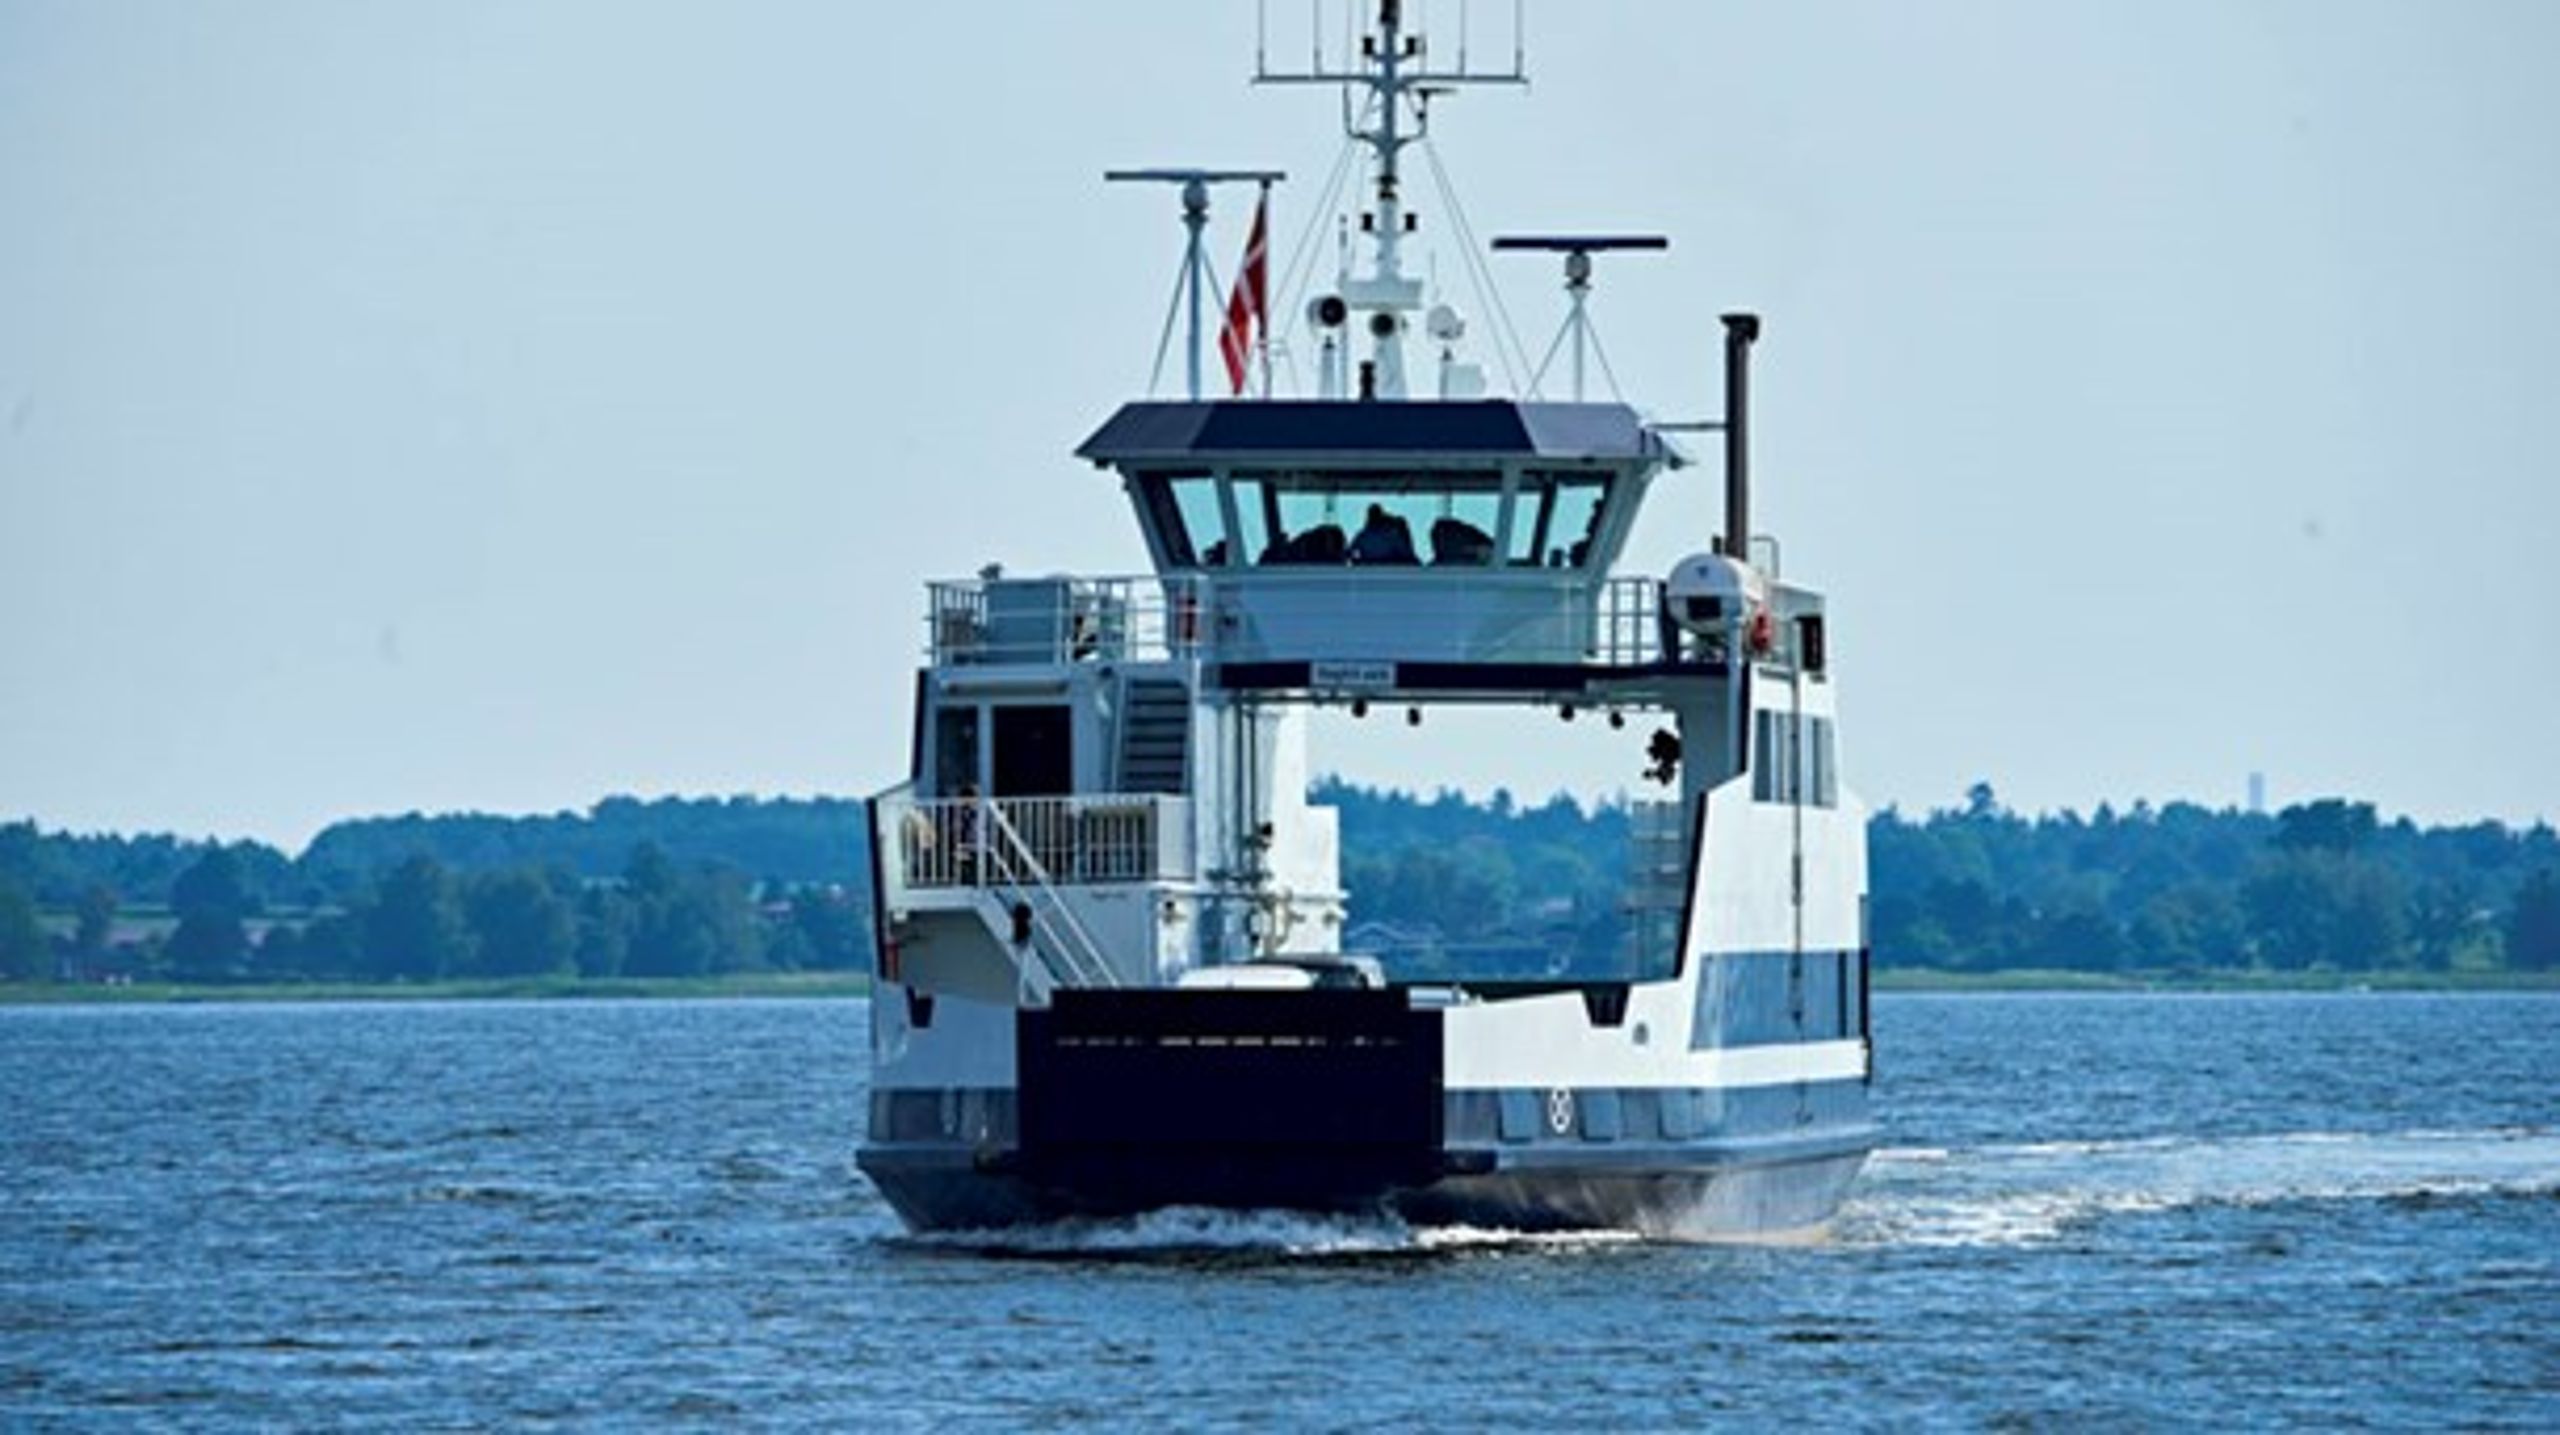 I en rapport udarbejdet af Siemens fremhæves 30 danske småfærger, hvor det er rentabelt at omlægge fra diesel til el. Færgen Orø, som sejler mellem Holbæk og Orø, er en af dem.